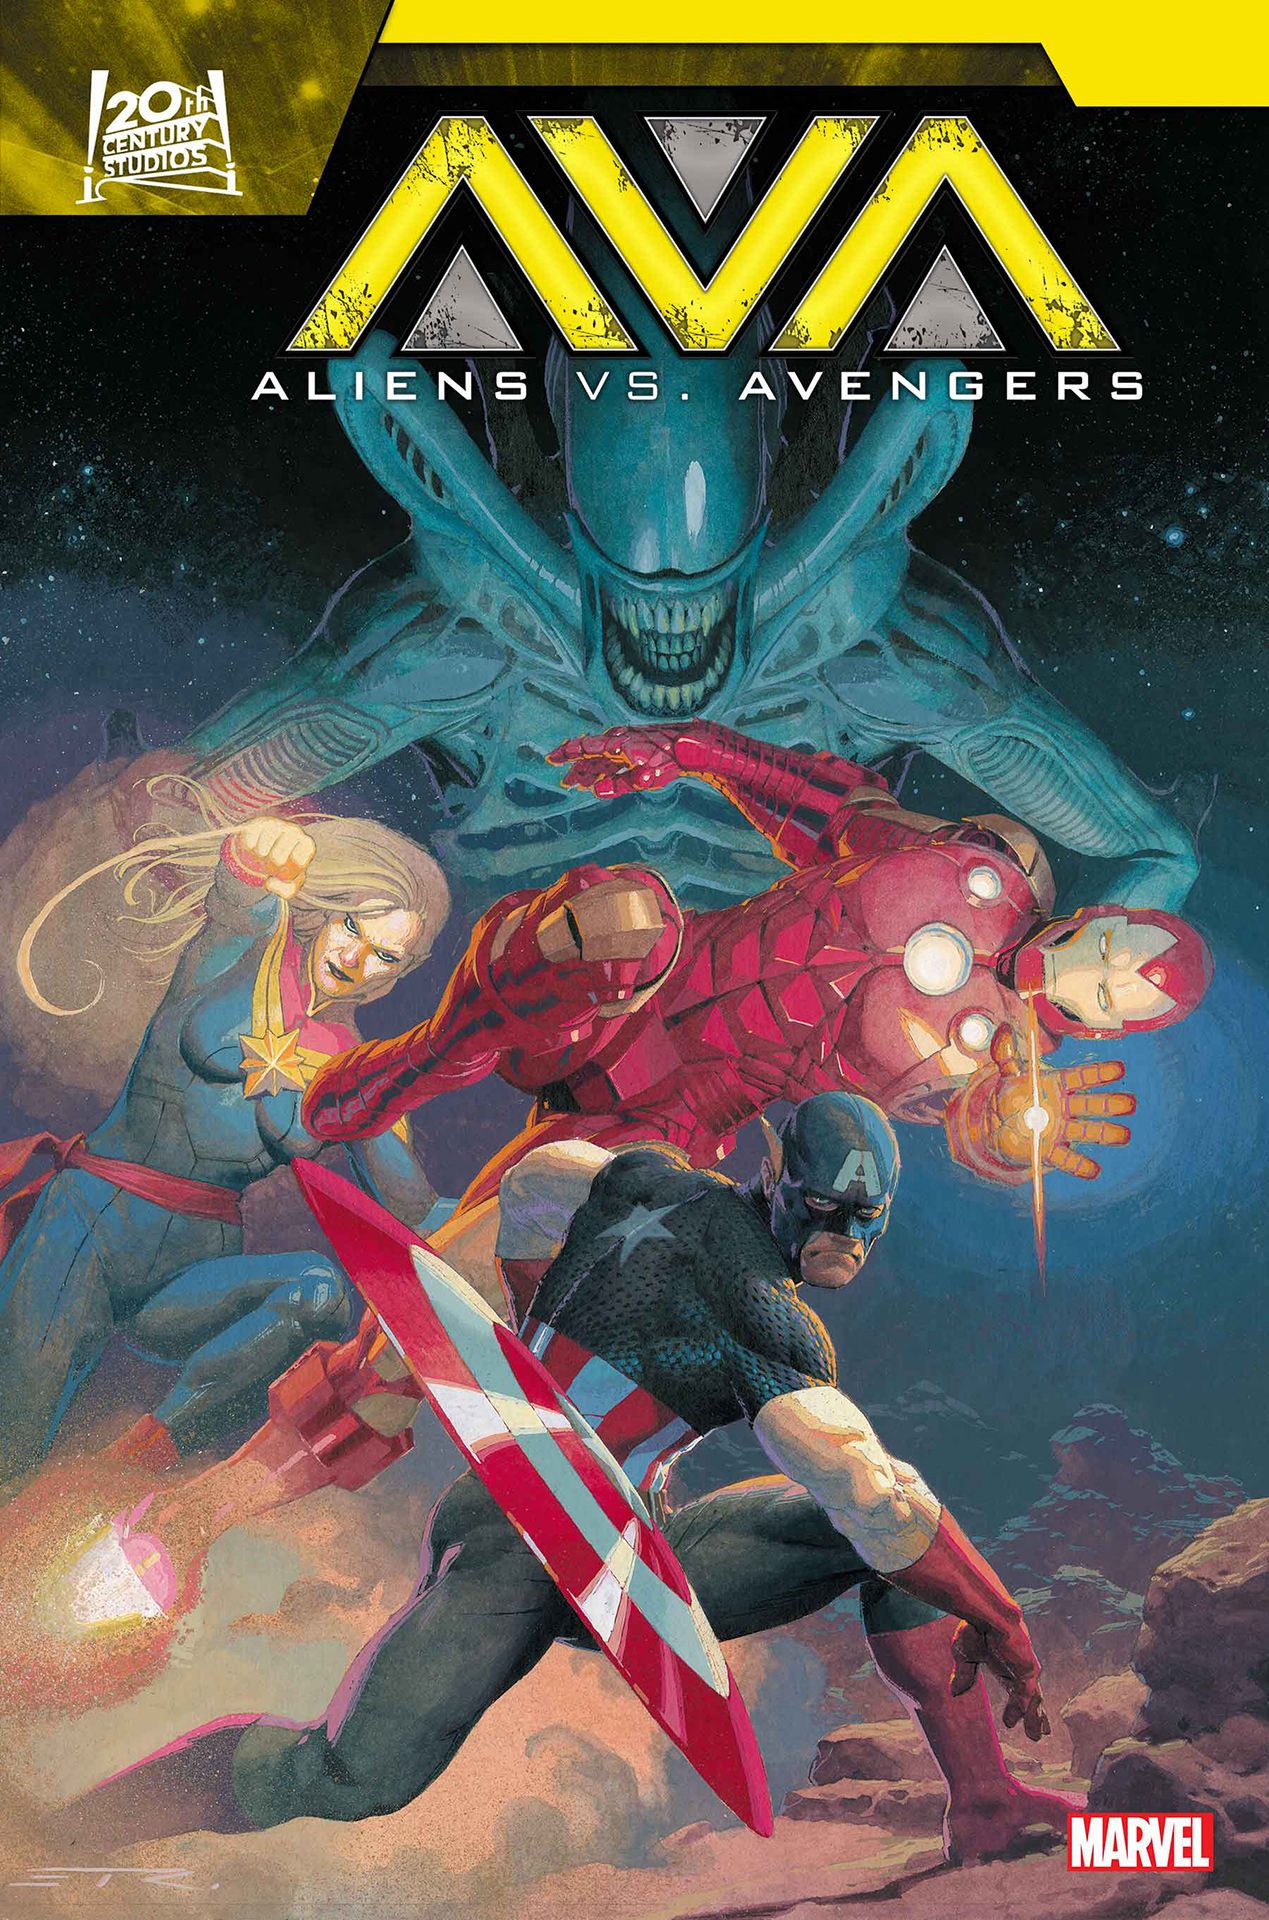 Alien vs. Avengers #1 cover.